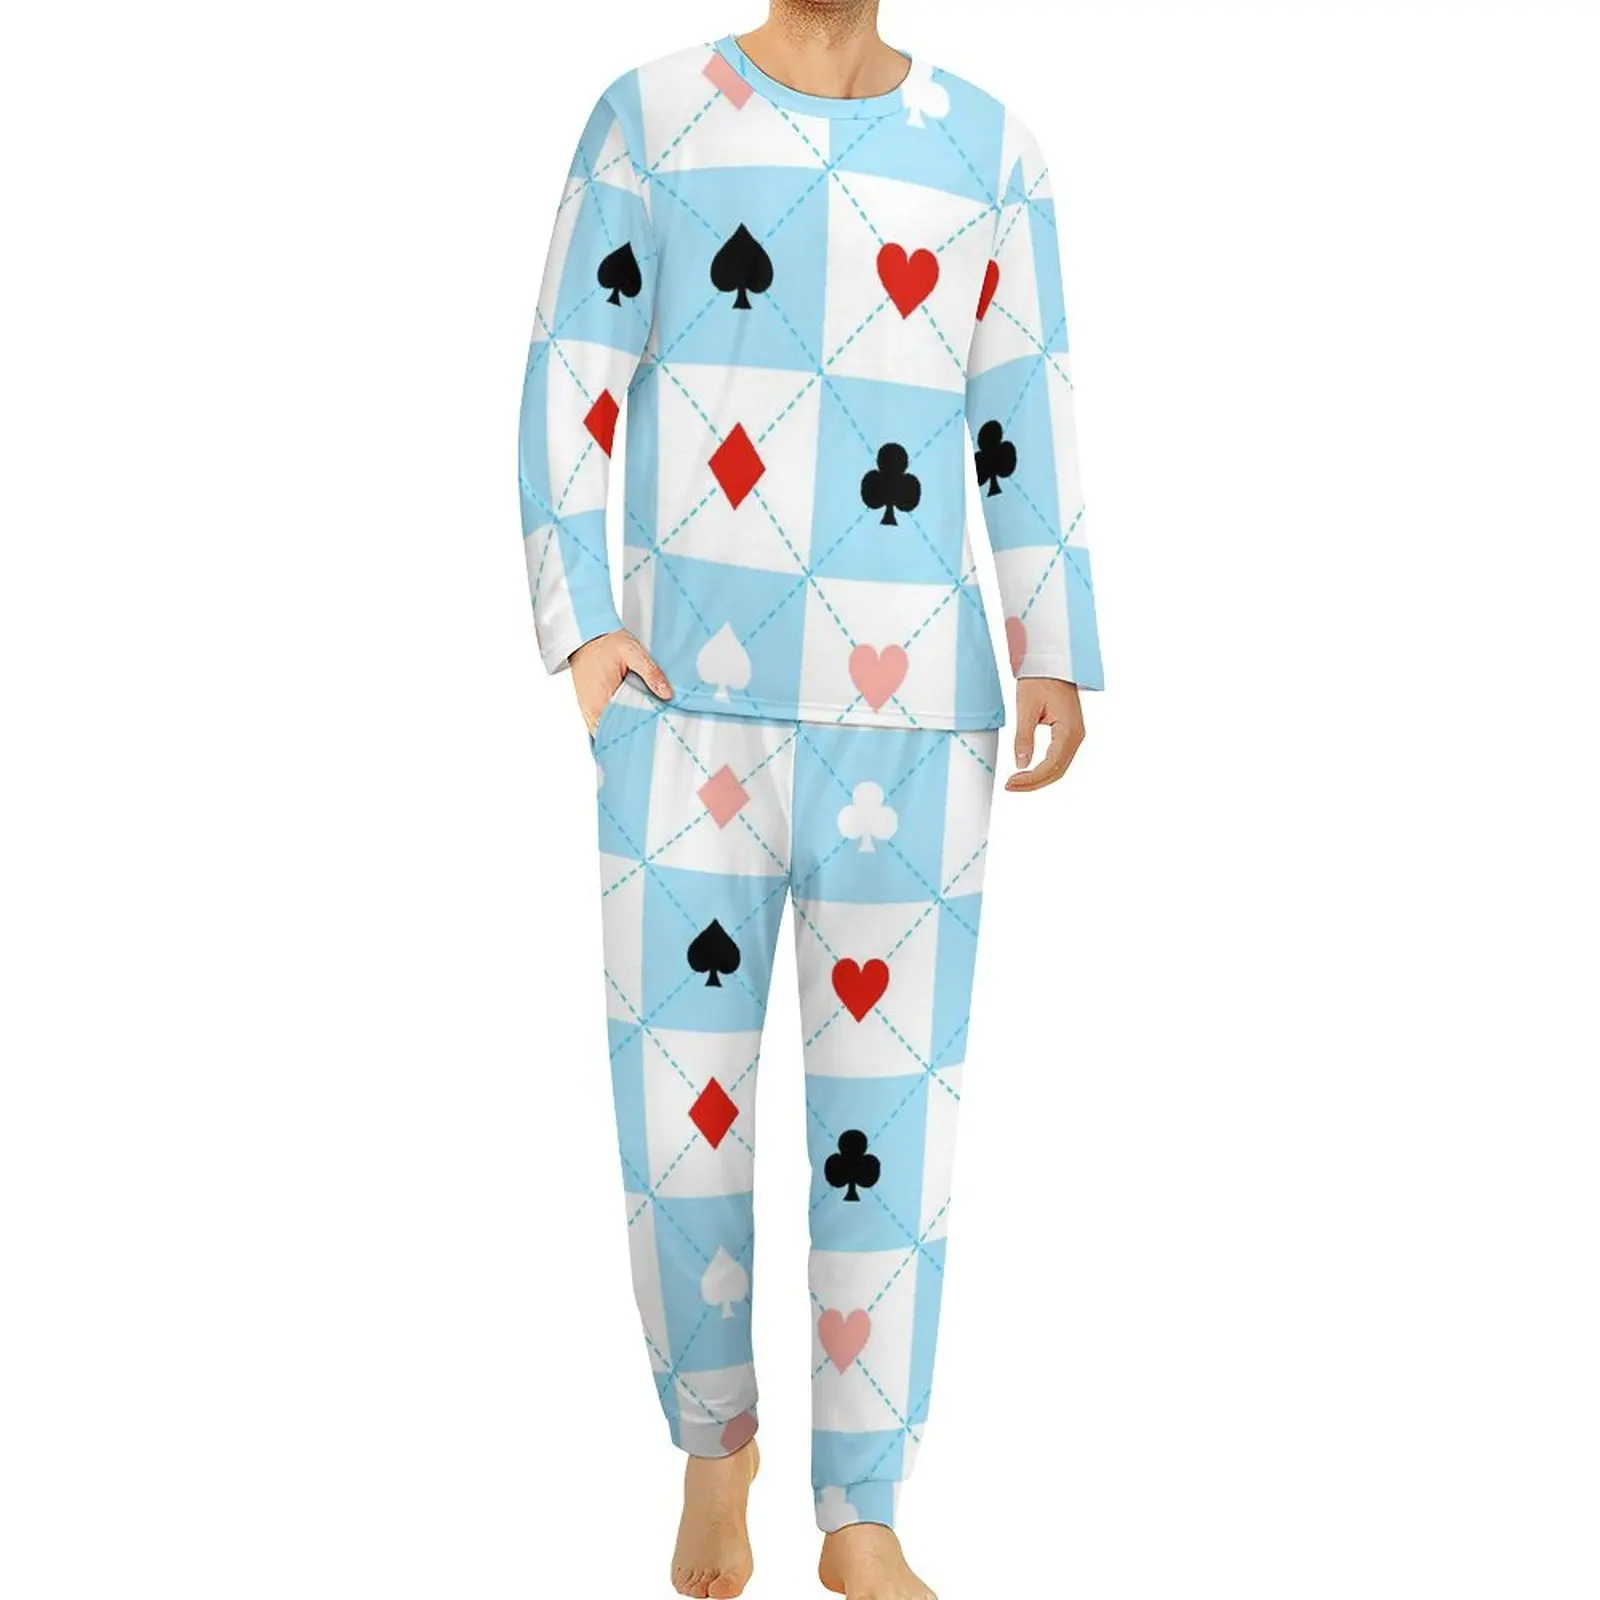 ensemble-de-pyjama-a-carreaux-bleu-et-blanc-coussins-poker-pour-hommes-manches-longues-beaux-ensembles-de-pyjama-vetements-de-nuit-graphiques-pour-la-maison-grande-taille-03-pieces-2-pieces